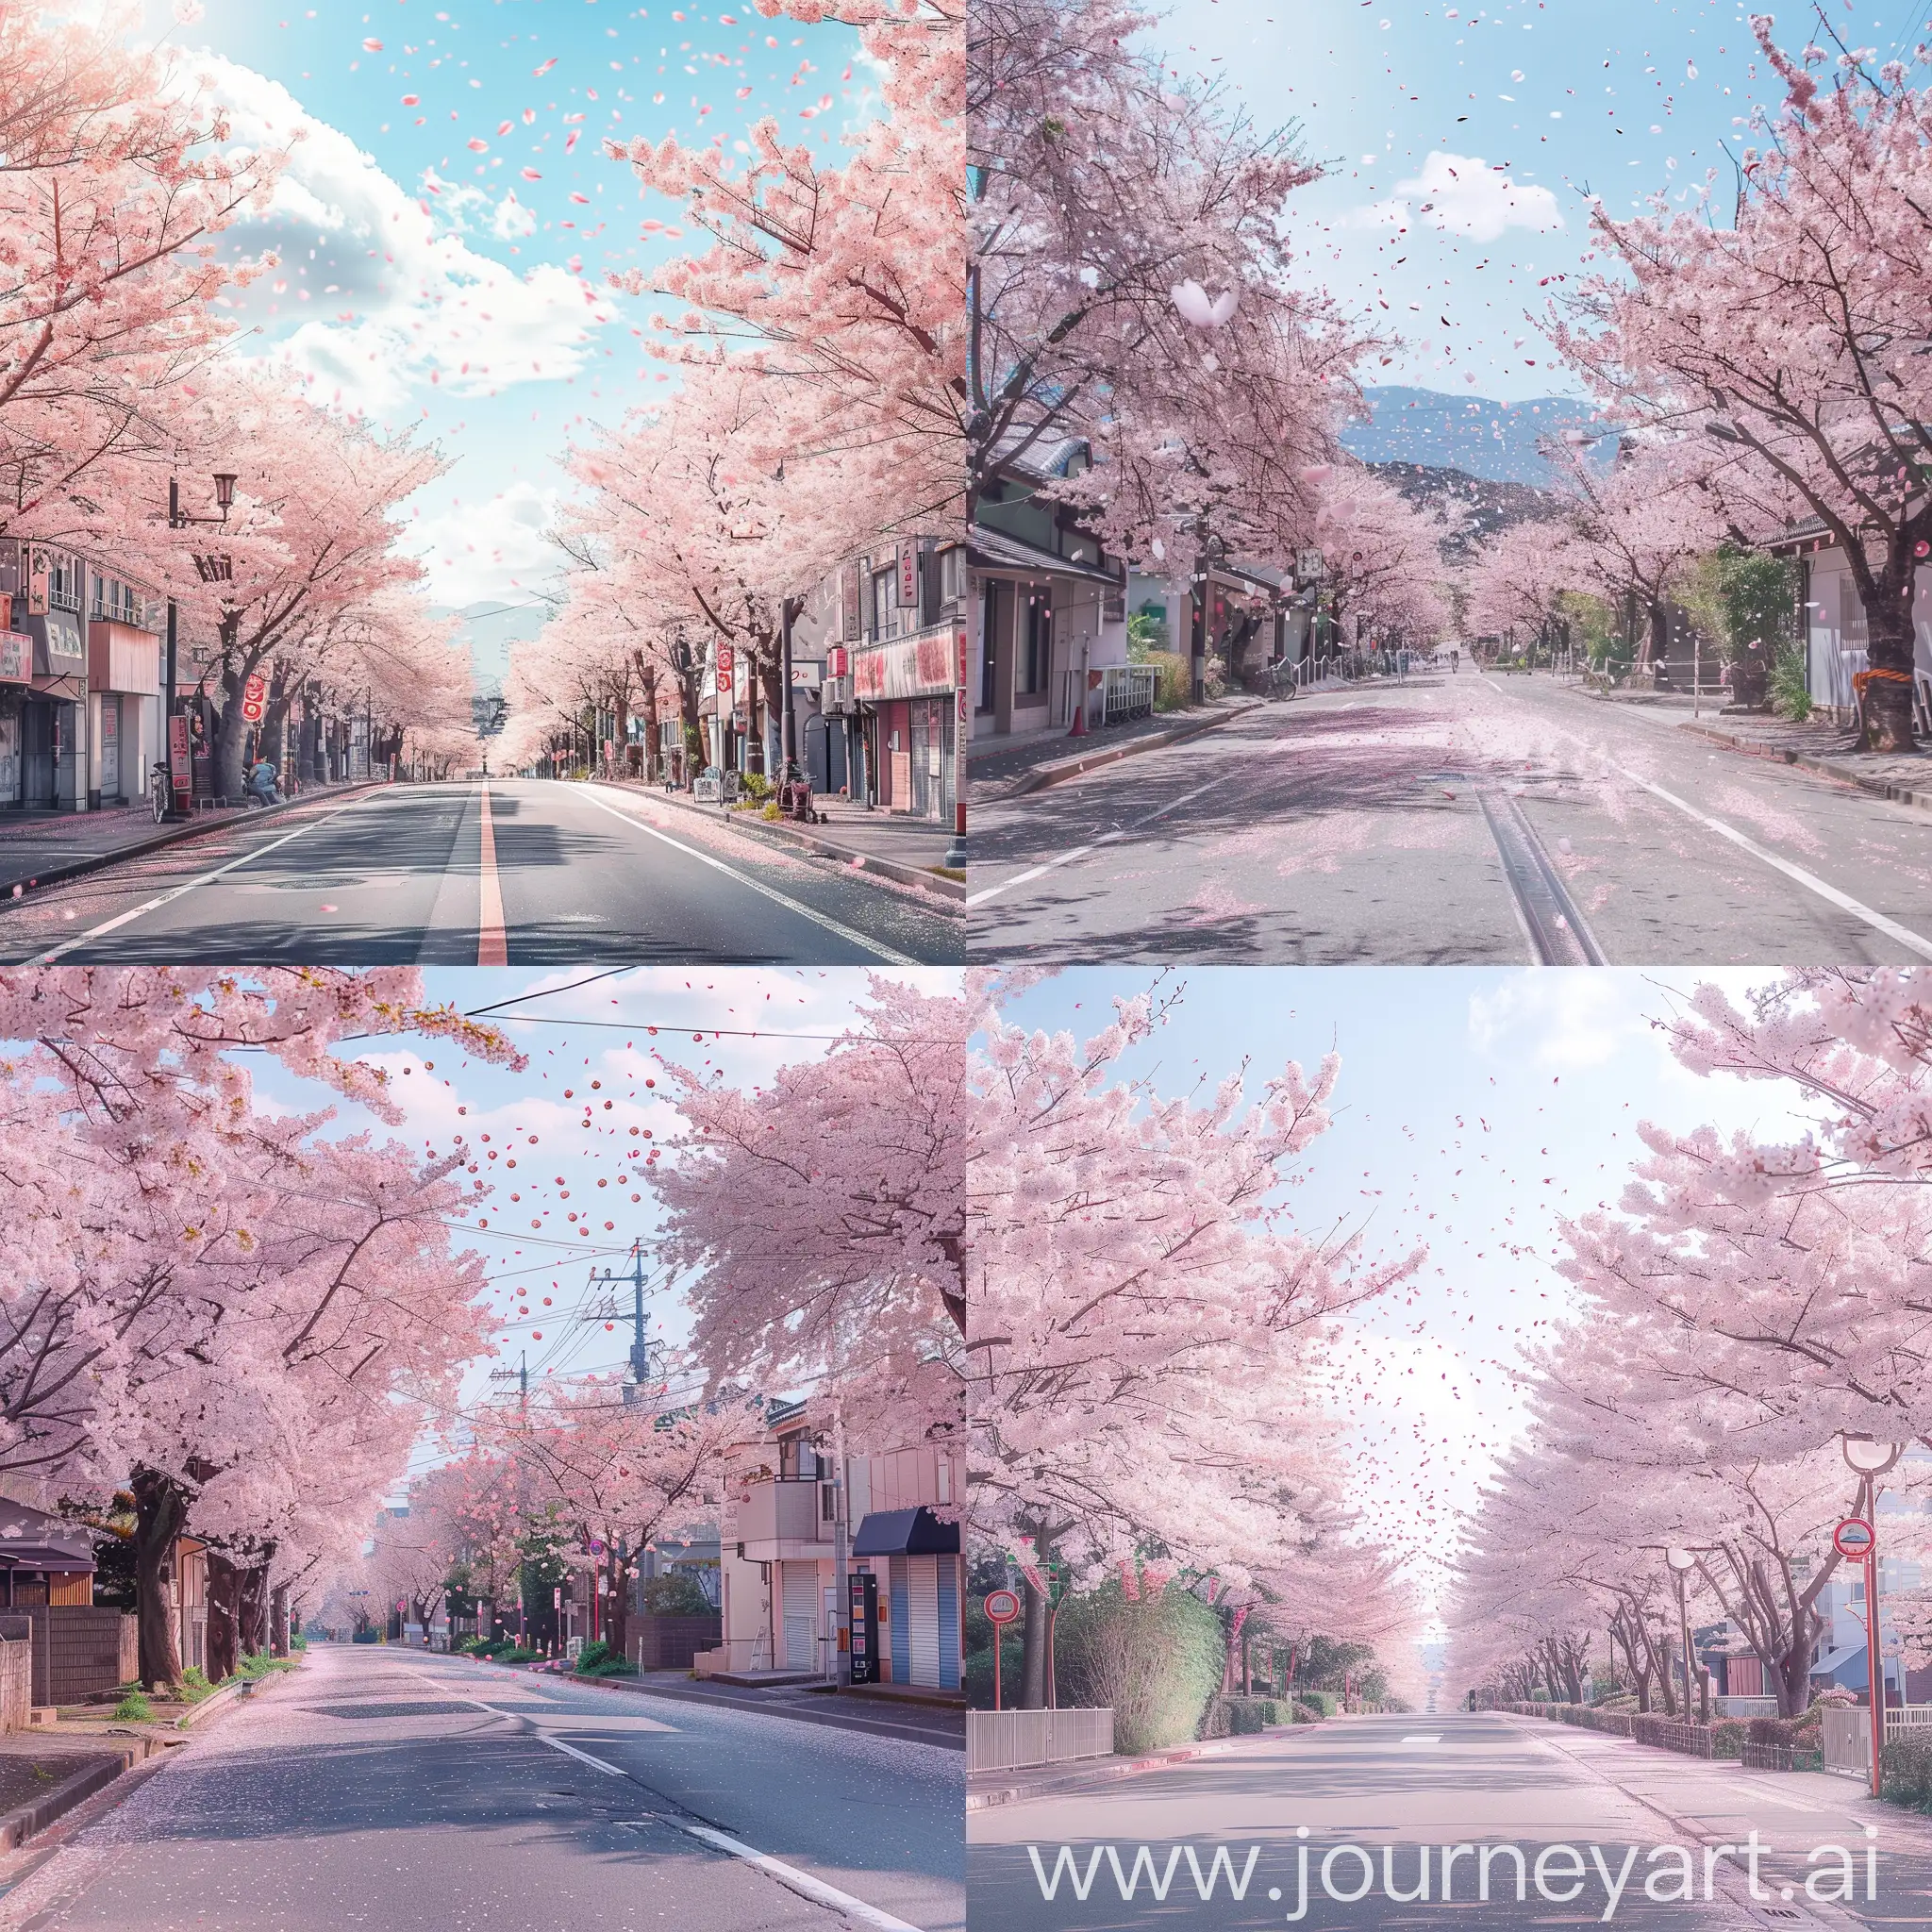 Cherry-Blossom-Street-Scene-Vibrant-Sakura-Trees-in-Full-Bloom